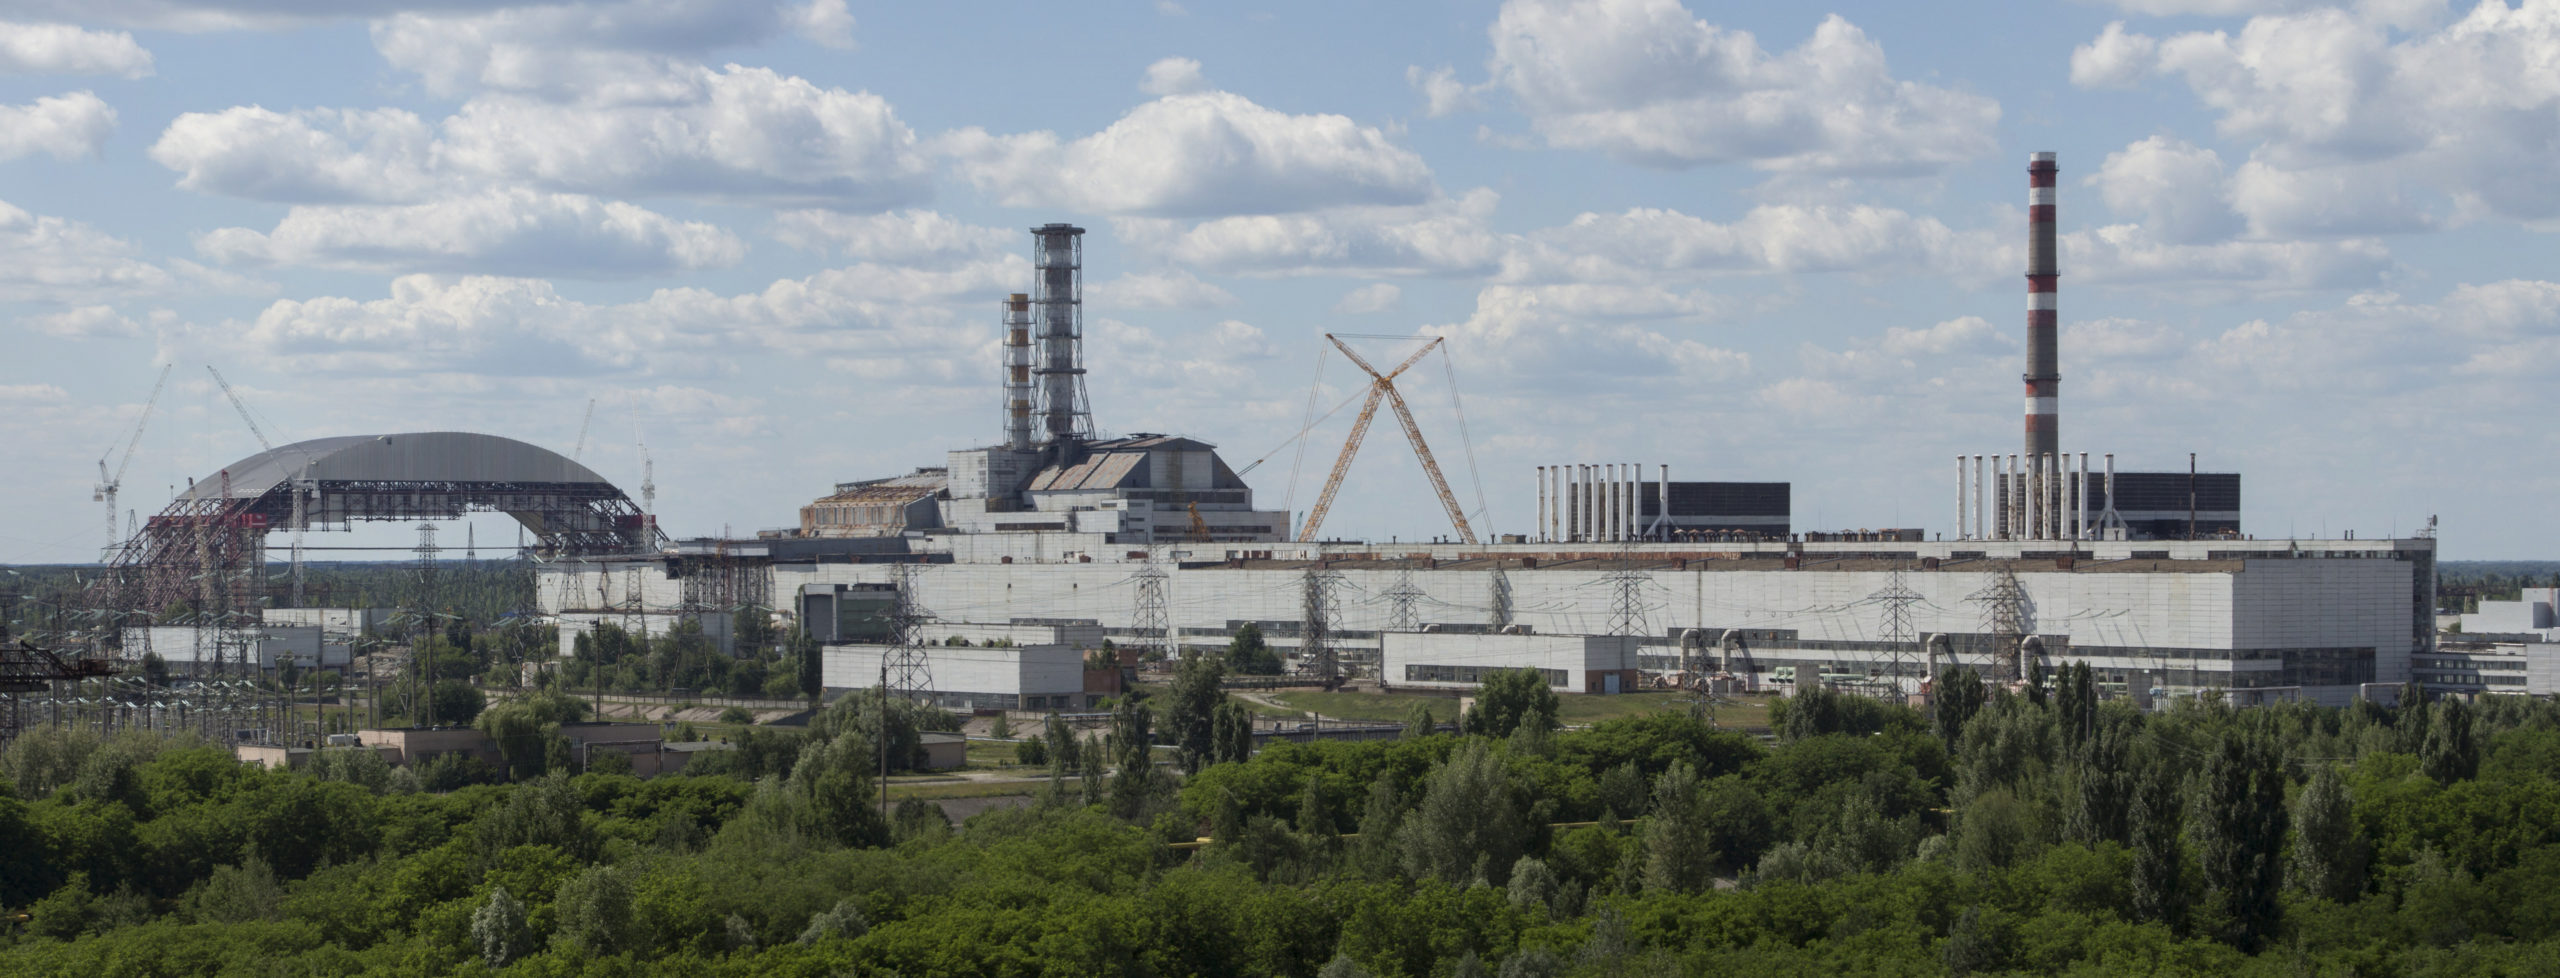 Exemple de communs négatifs : la centrale nucléaire de Tchernobyl